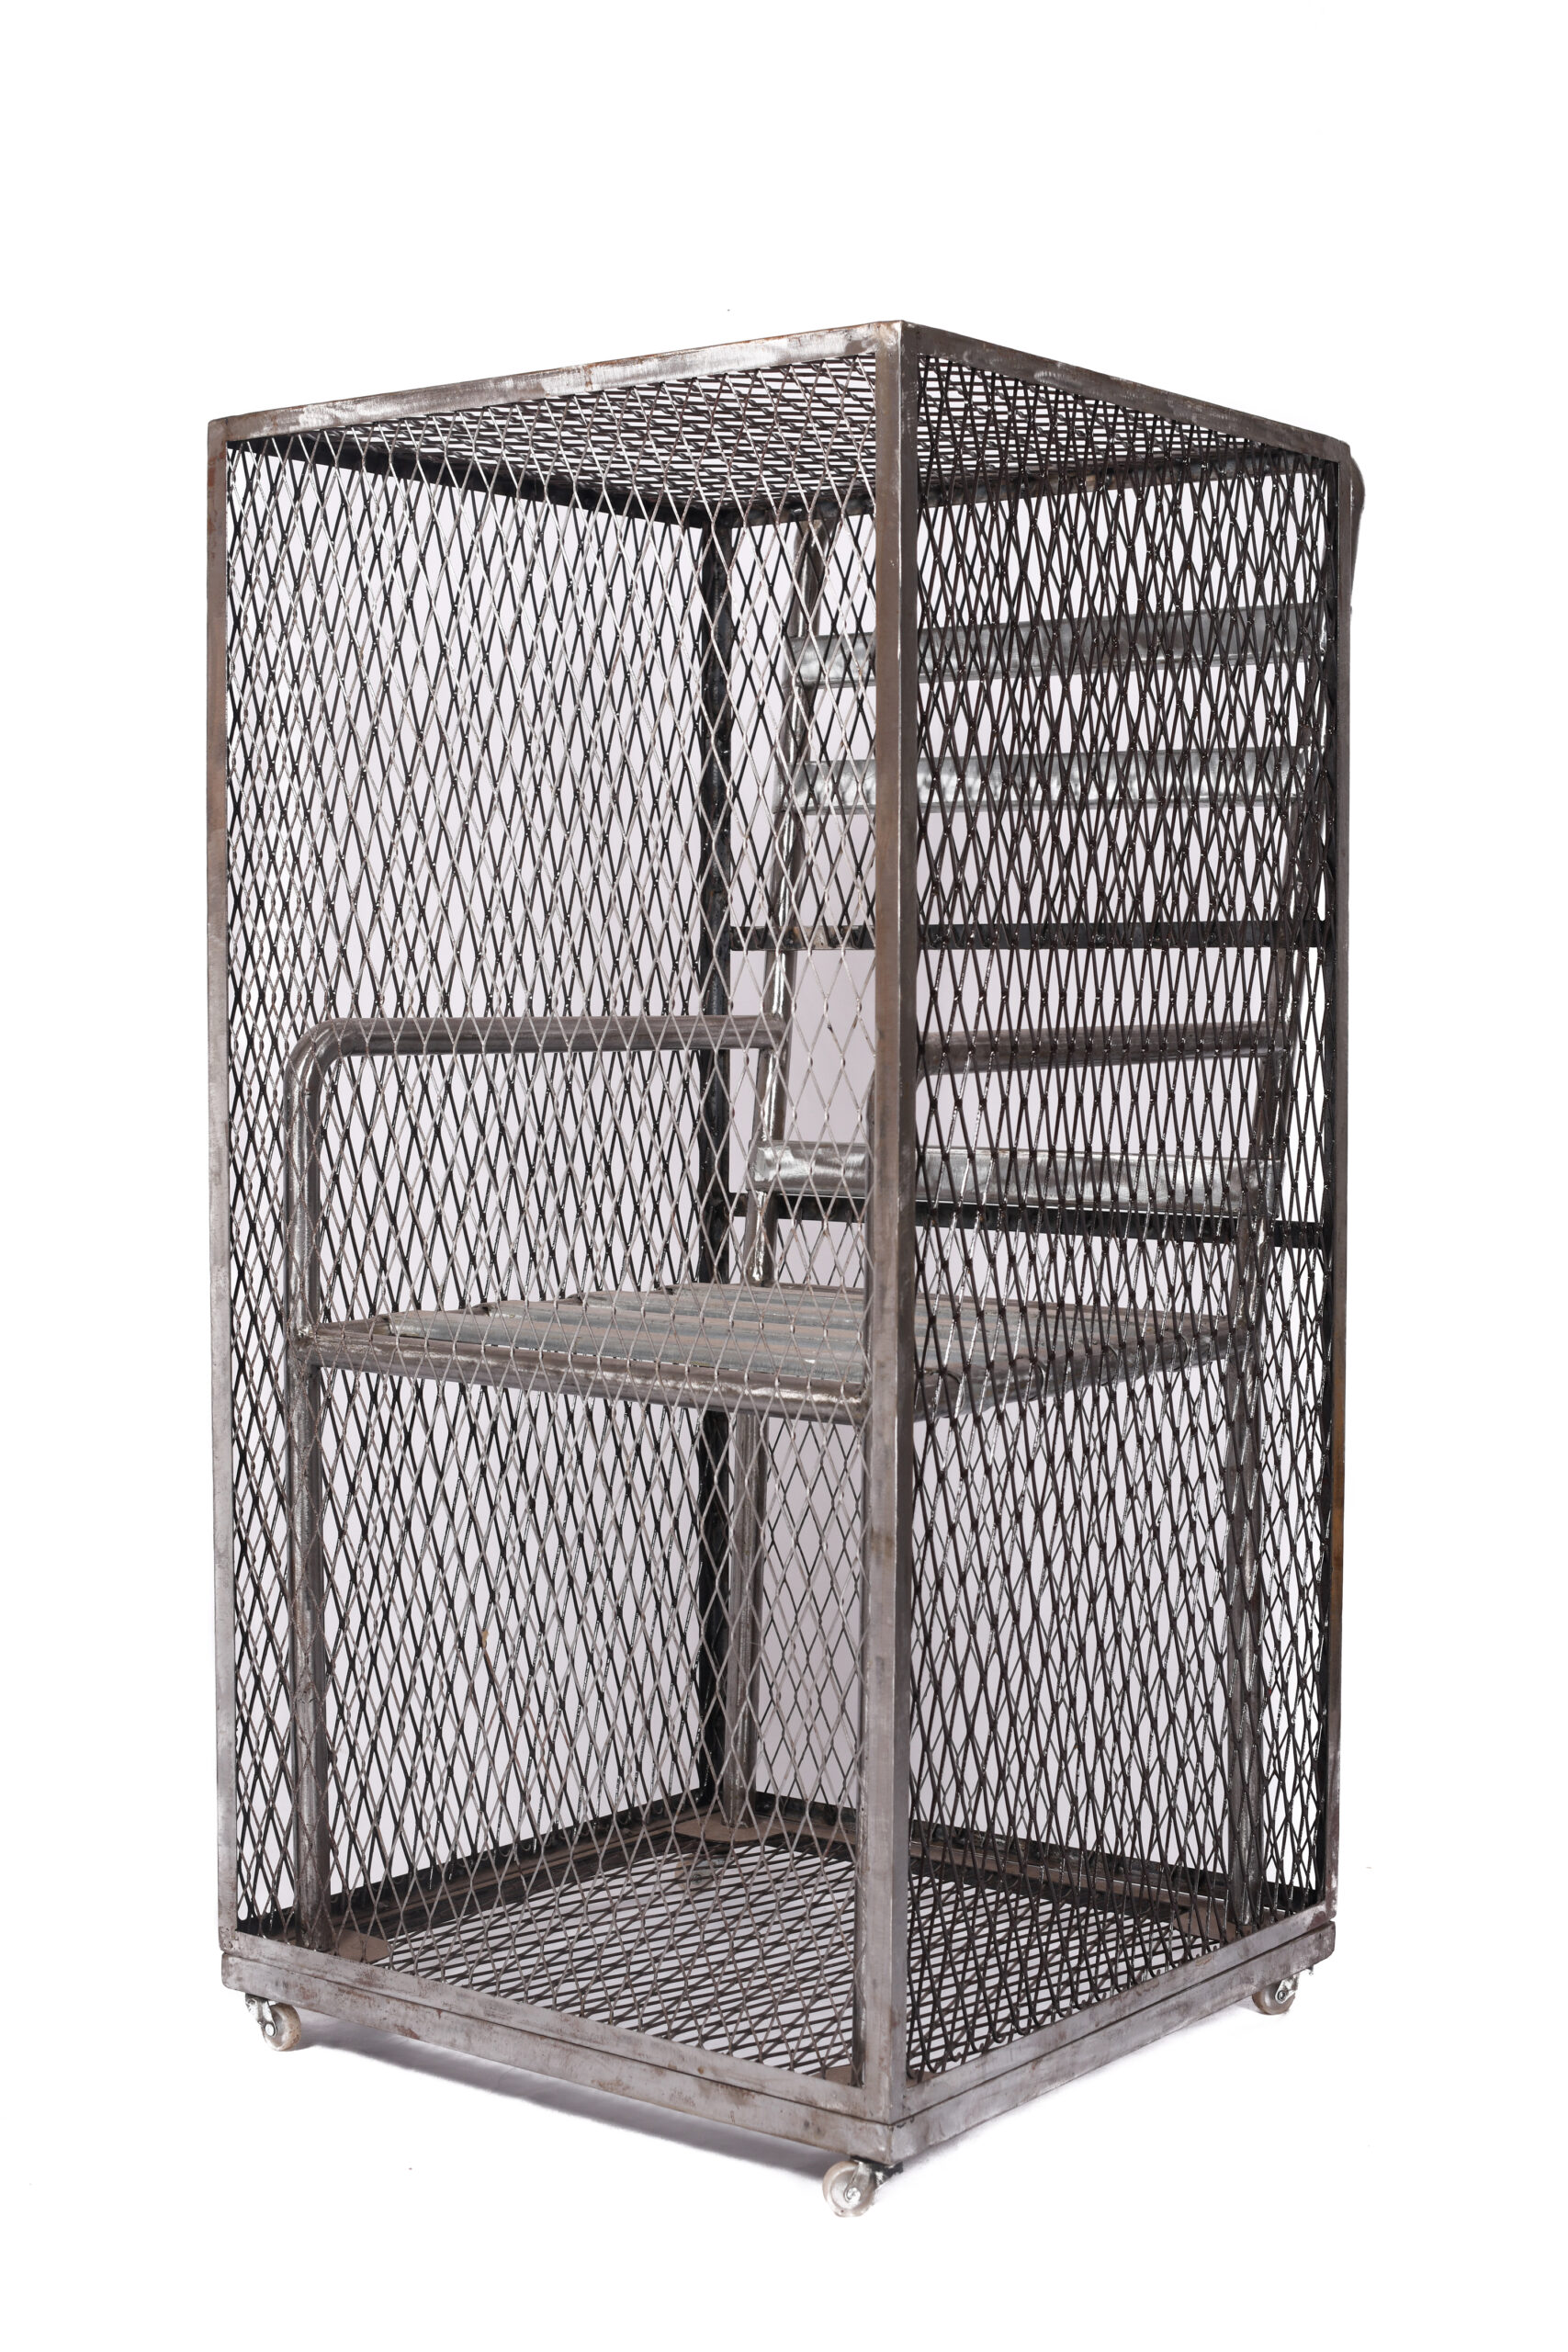 HASSAN BOURKIA (Né en 1956) Une chaise, 2019 Installation Chaise et cage métallique 108 x 64 x 56 cm